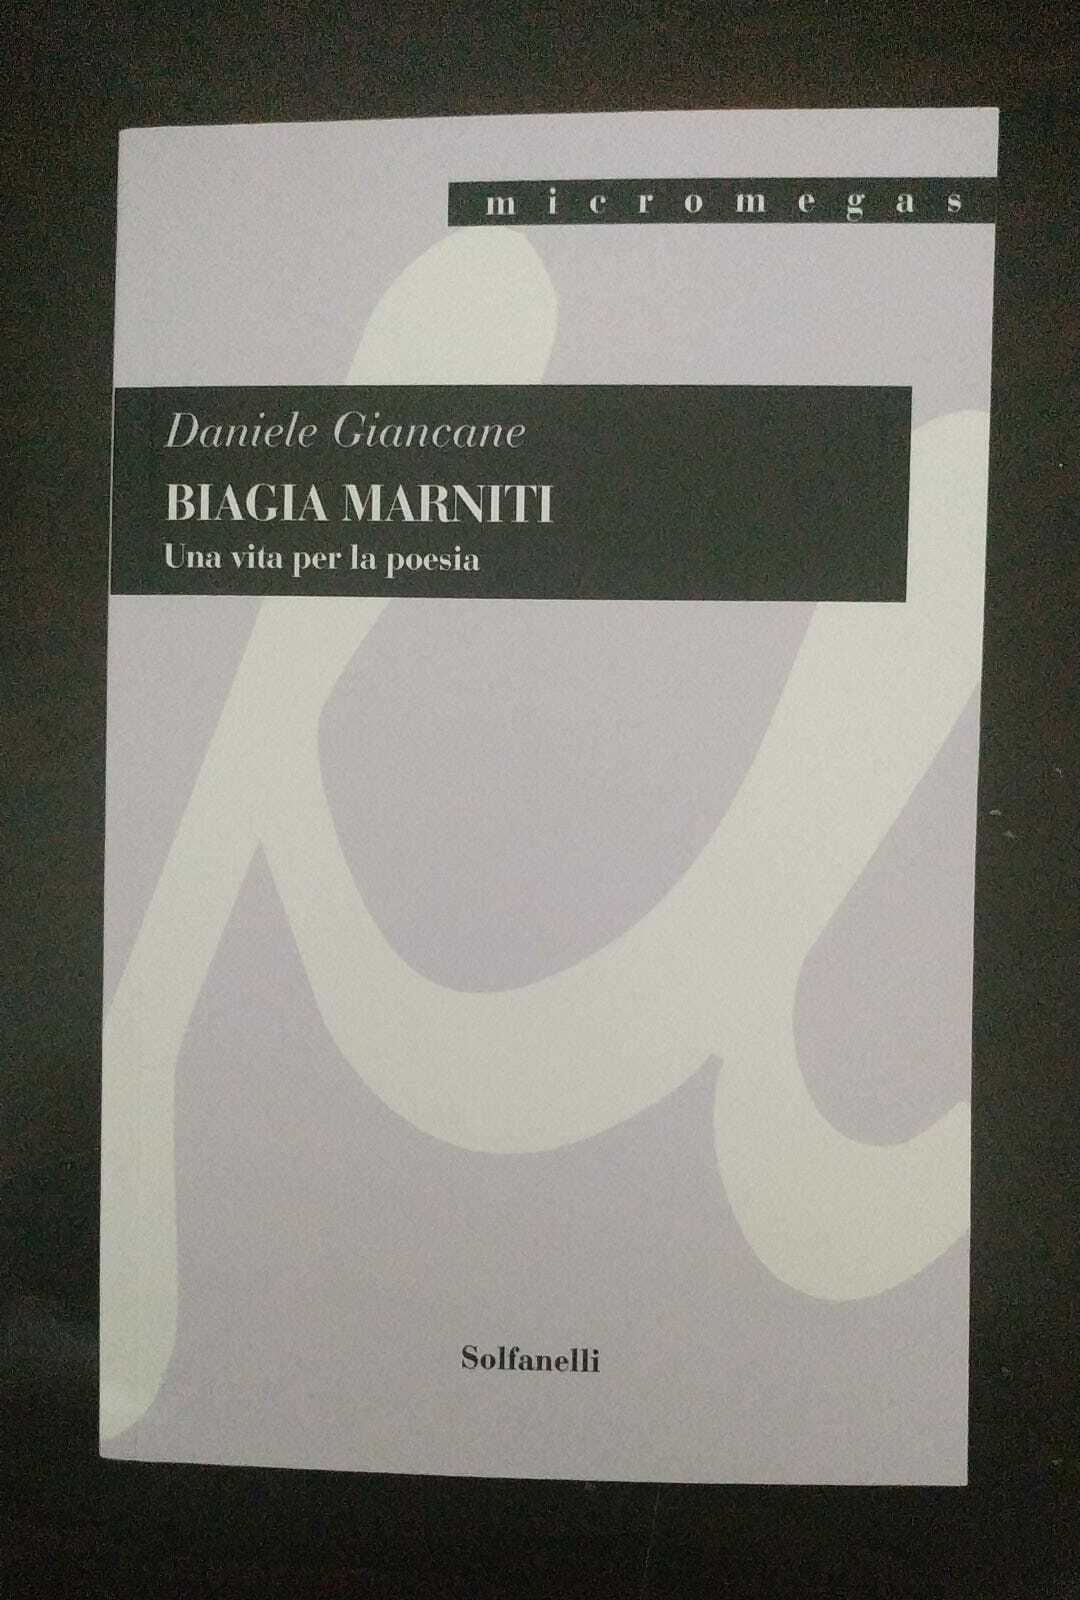 BIAGIA MARNITI Una vita per la poesia di Daniele Giancane,  2021,  Solfanelli